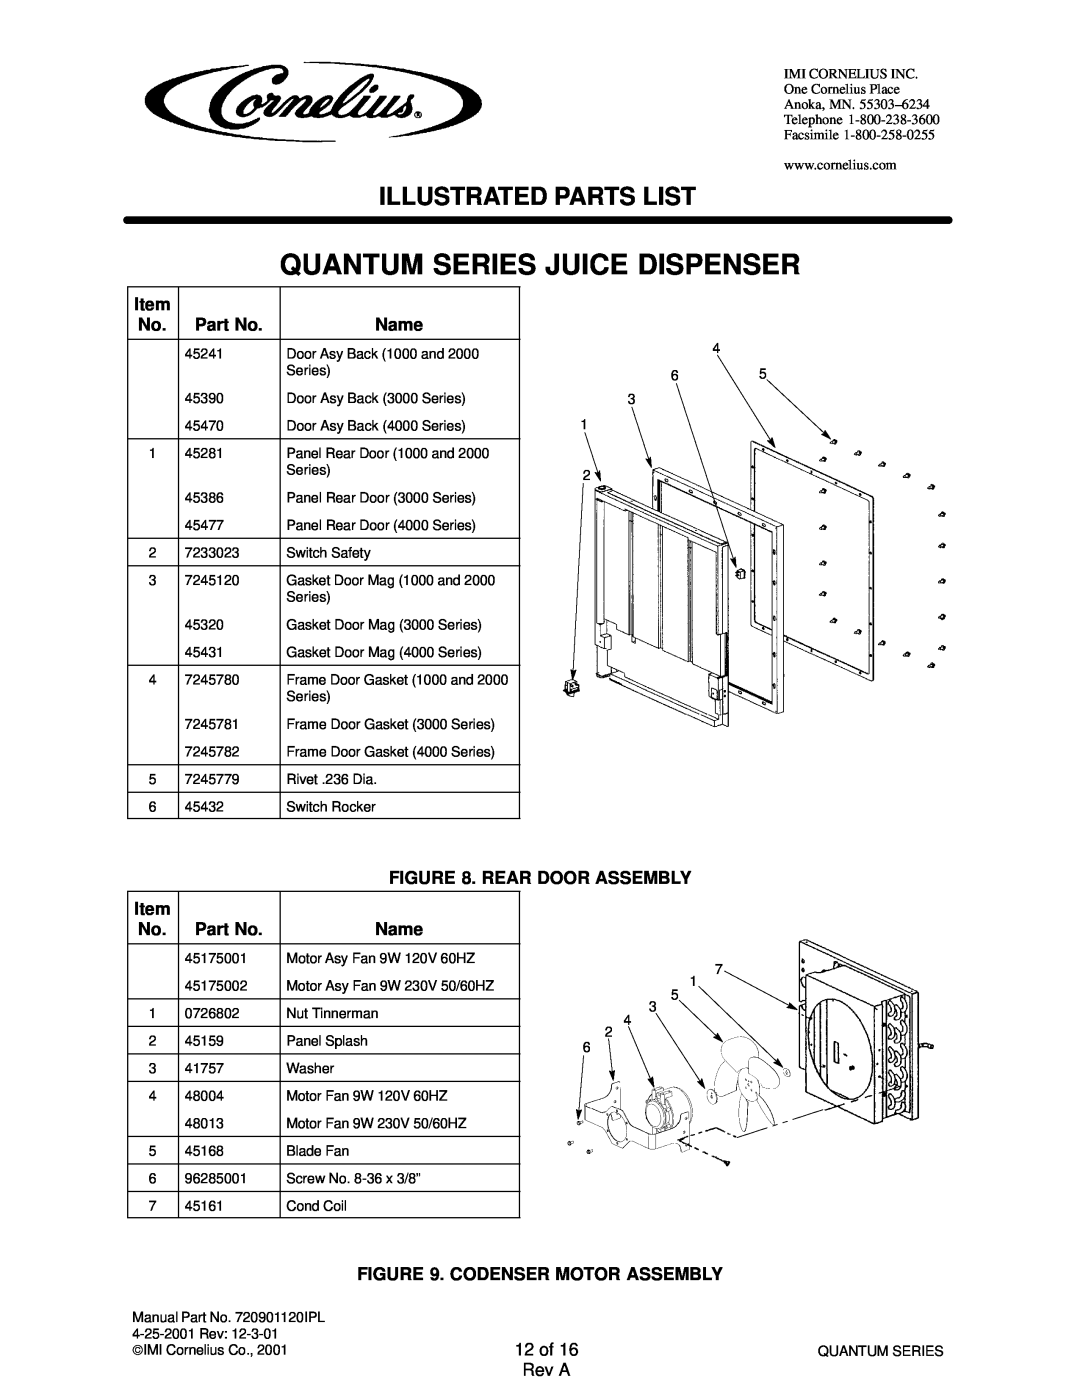 Panasonic 45400002, 45200103, 45200003, 45200004, 45200002, 45200101 Quantum Series Juice Dispenser, Illustrated Parts List 